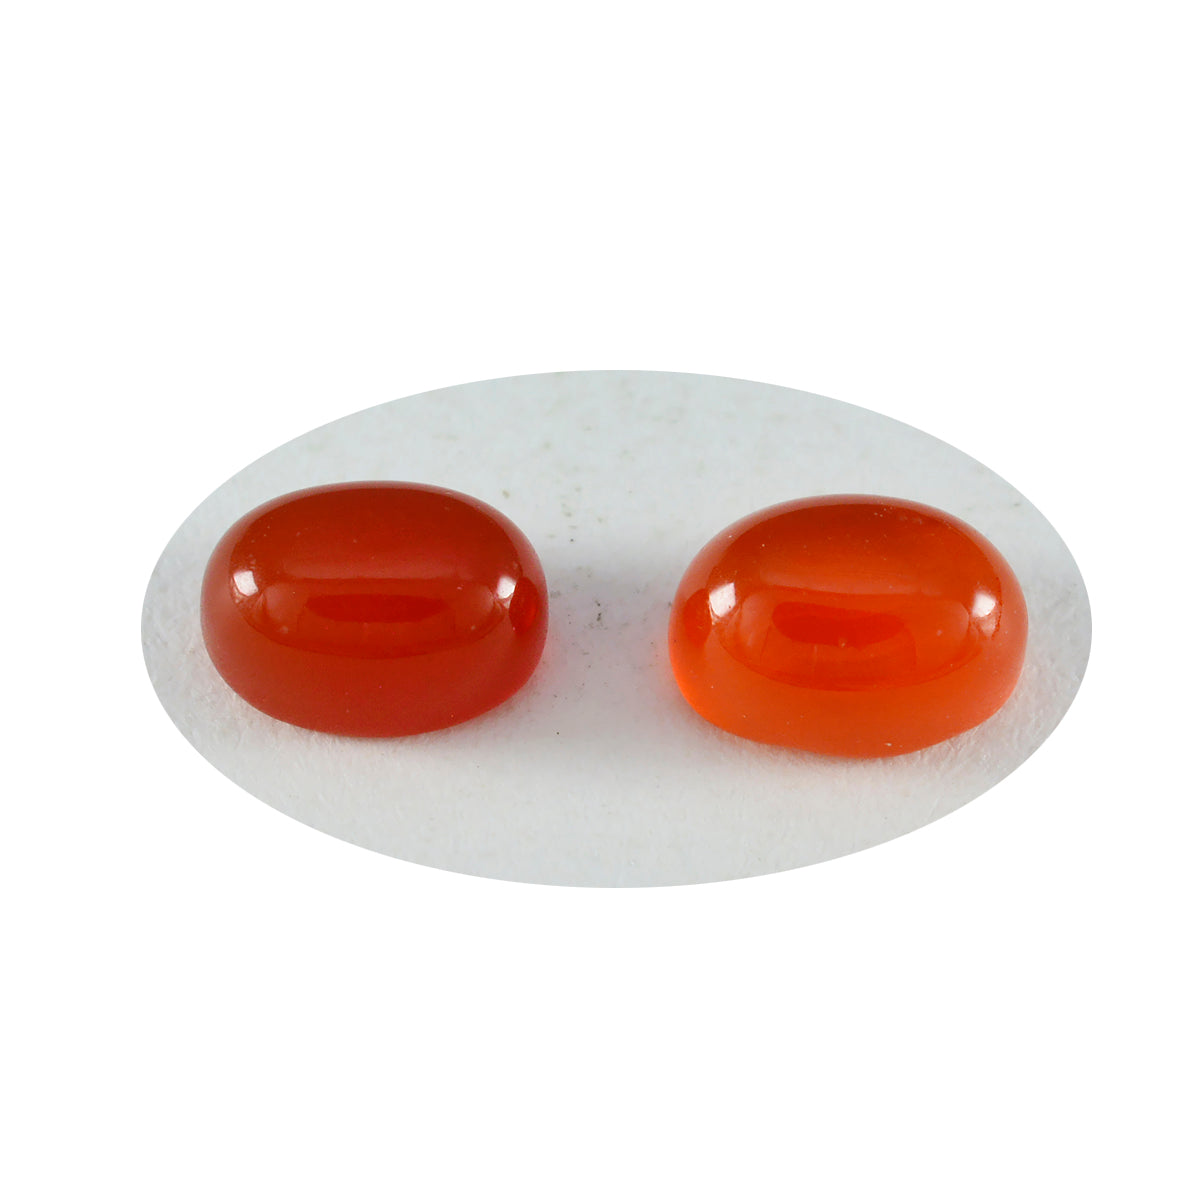 riyogems 1pc cabochon onyx rouge 9x11 mm forme ovale a1 pierres précieuses de qualité